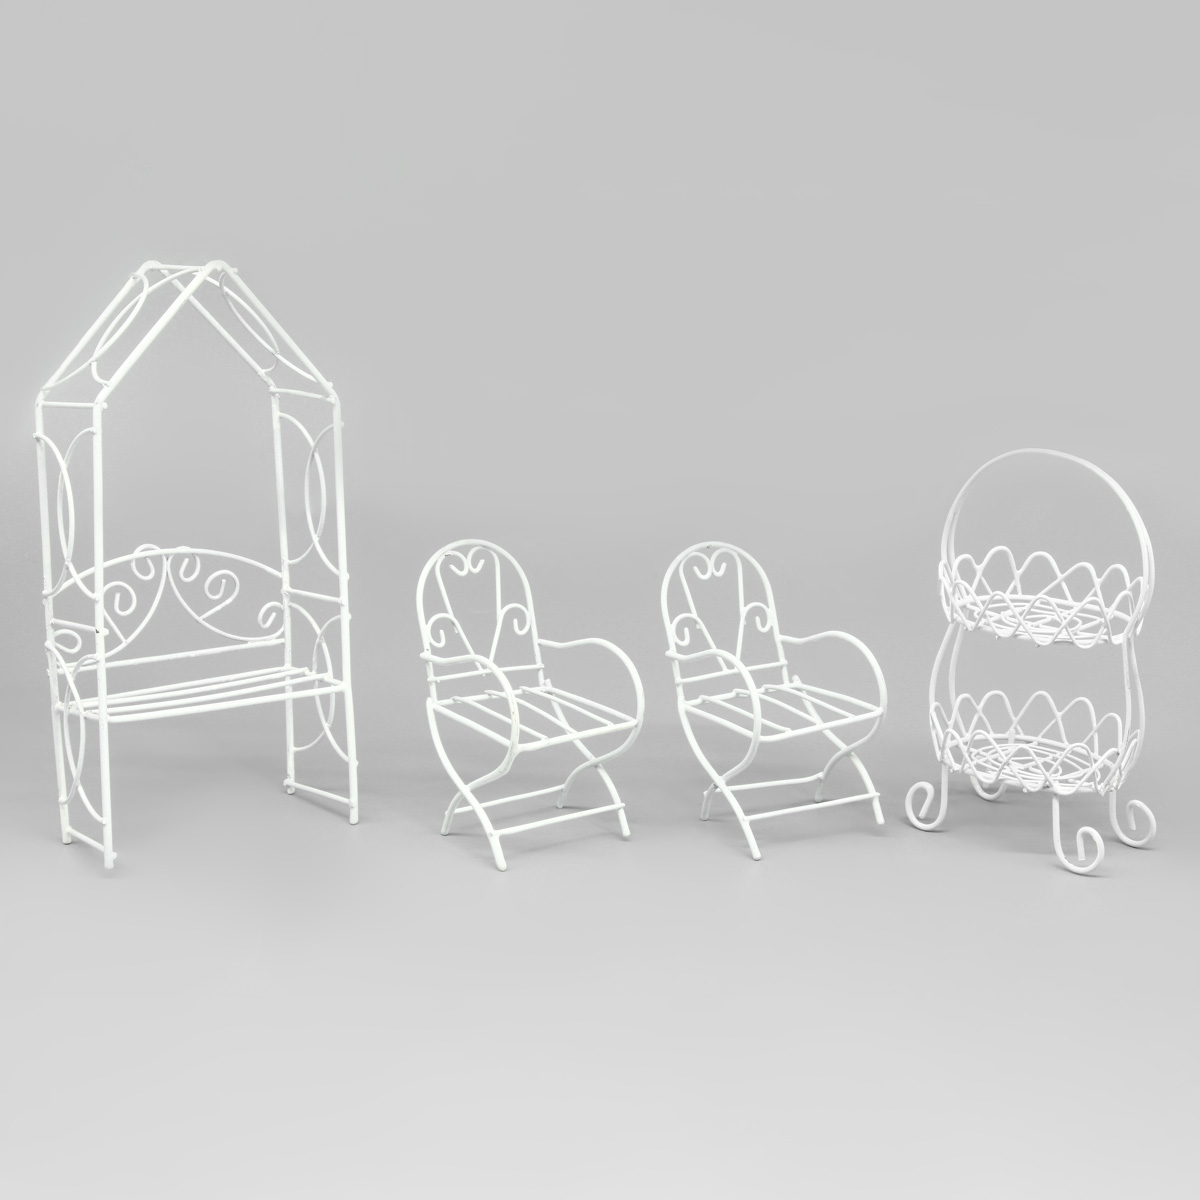 Мебель для куклы, 4 предмета (крело 2 шт., двухъярусная полочка, беседка), Astra&Craft